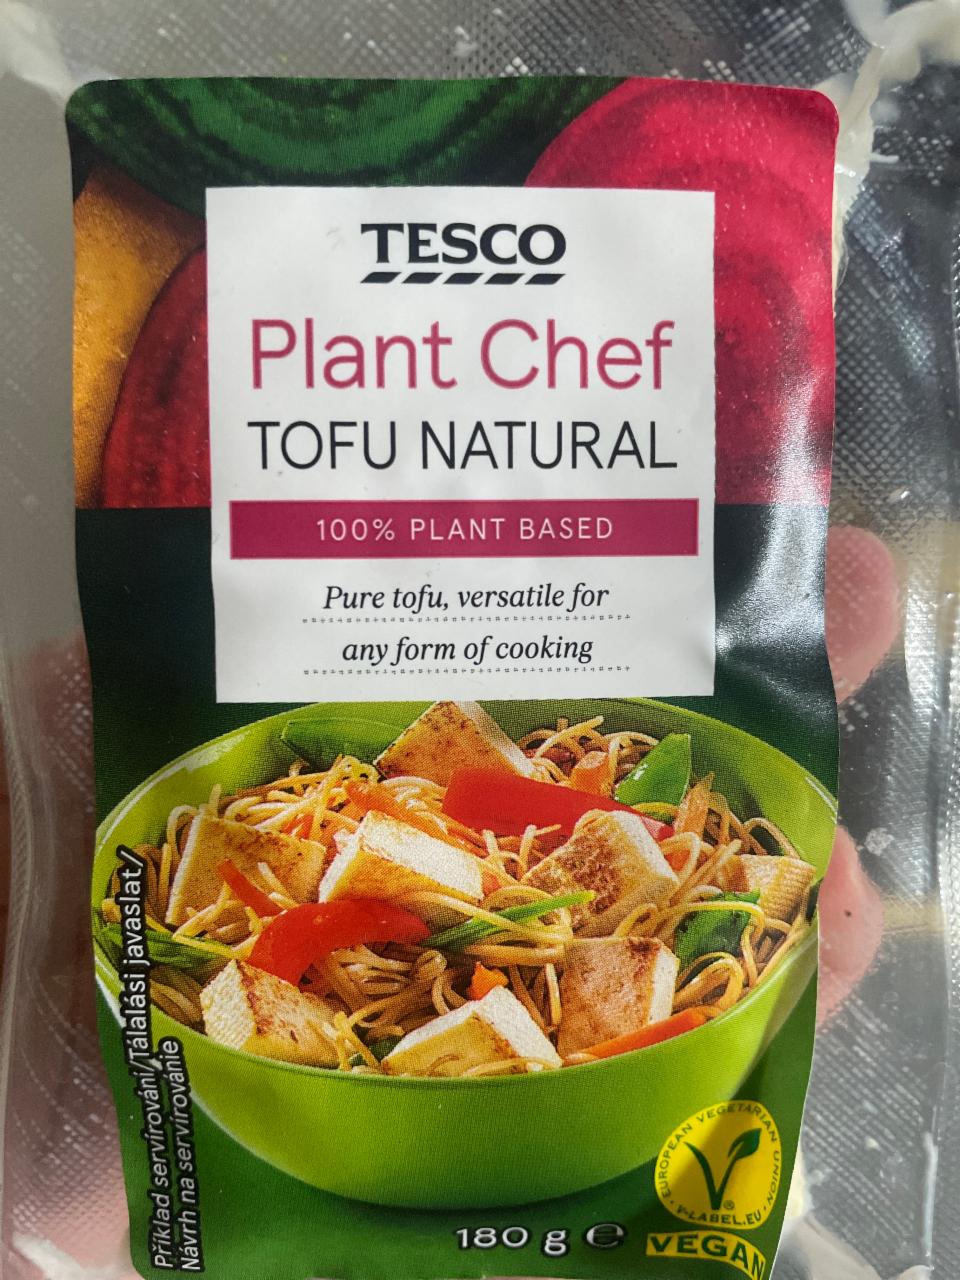 Фото - натуральный тофу plant chef tofu natural Tesco